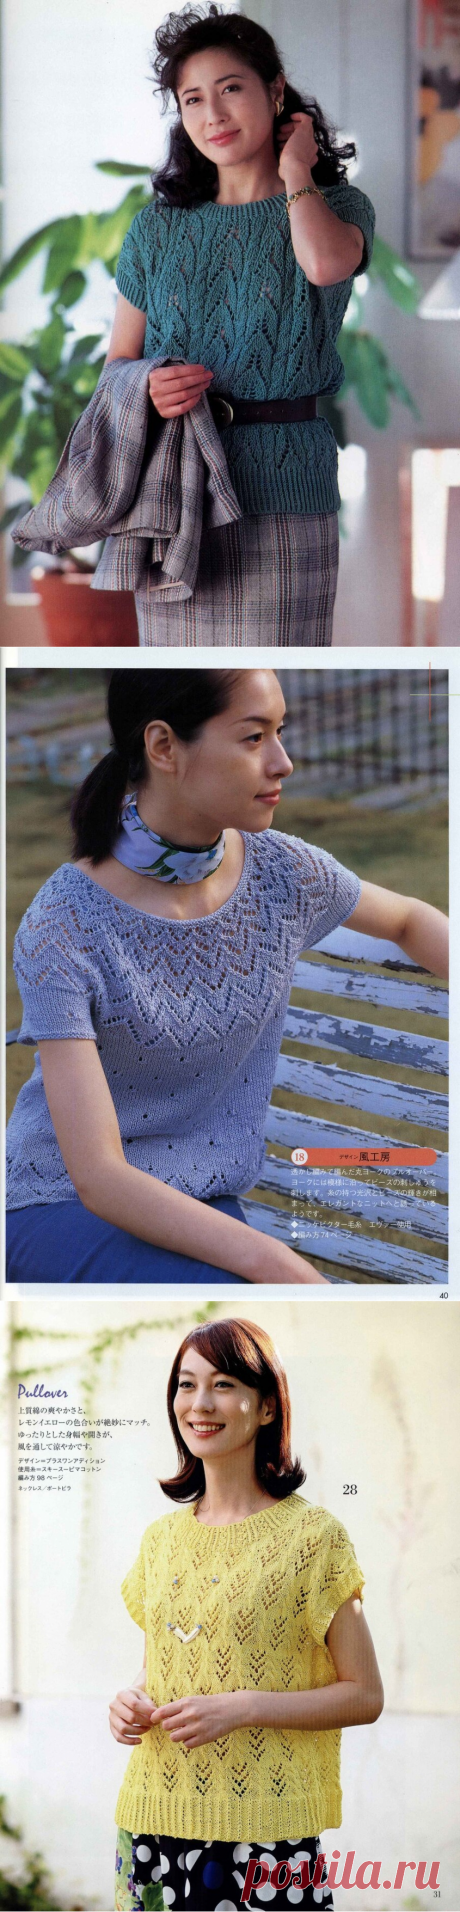 Подборка японских моделей с коротким рукавом + мастер-класс фонового узора. | Asha. Вязание и дизайн.🌶 | Яндекс Дзен